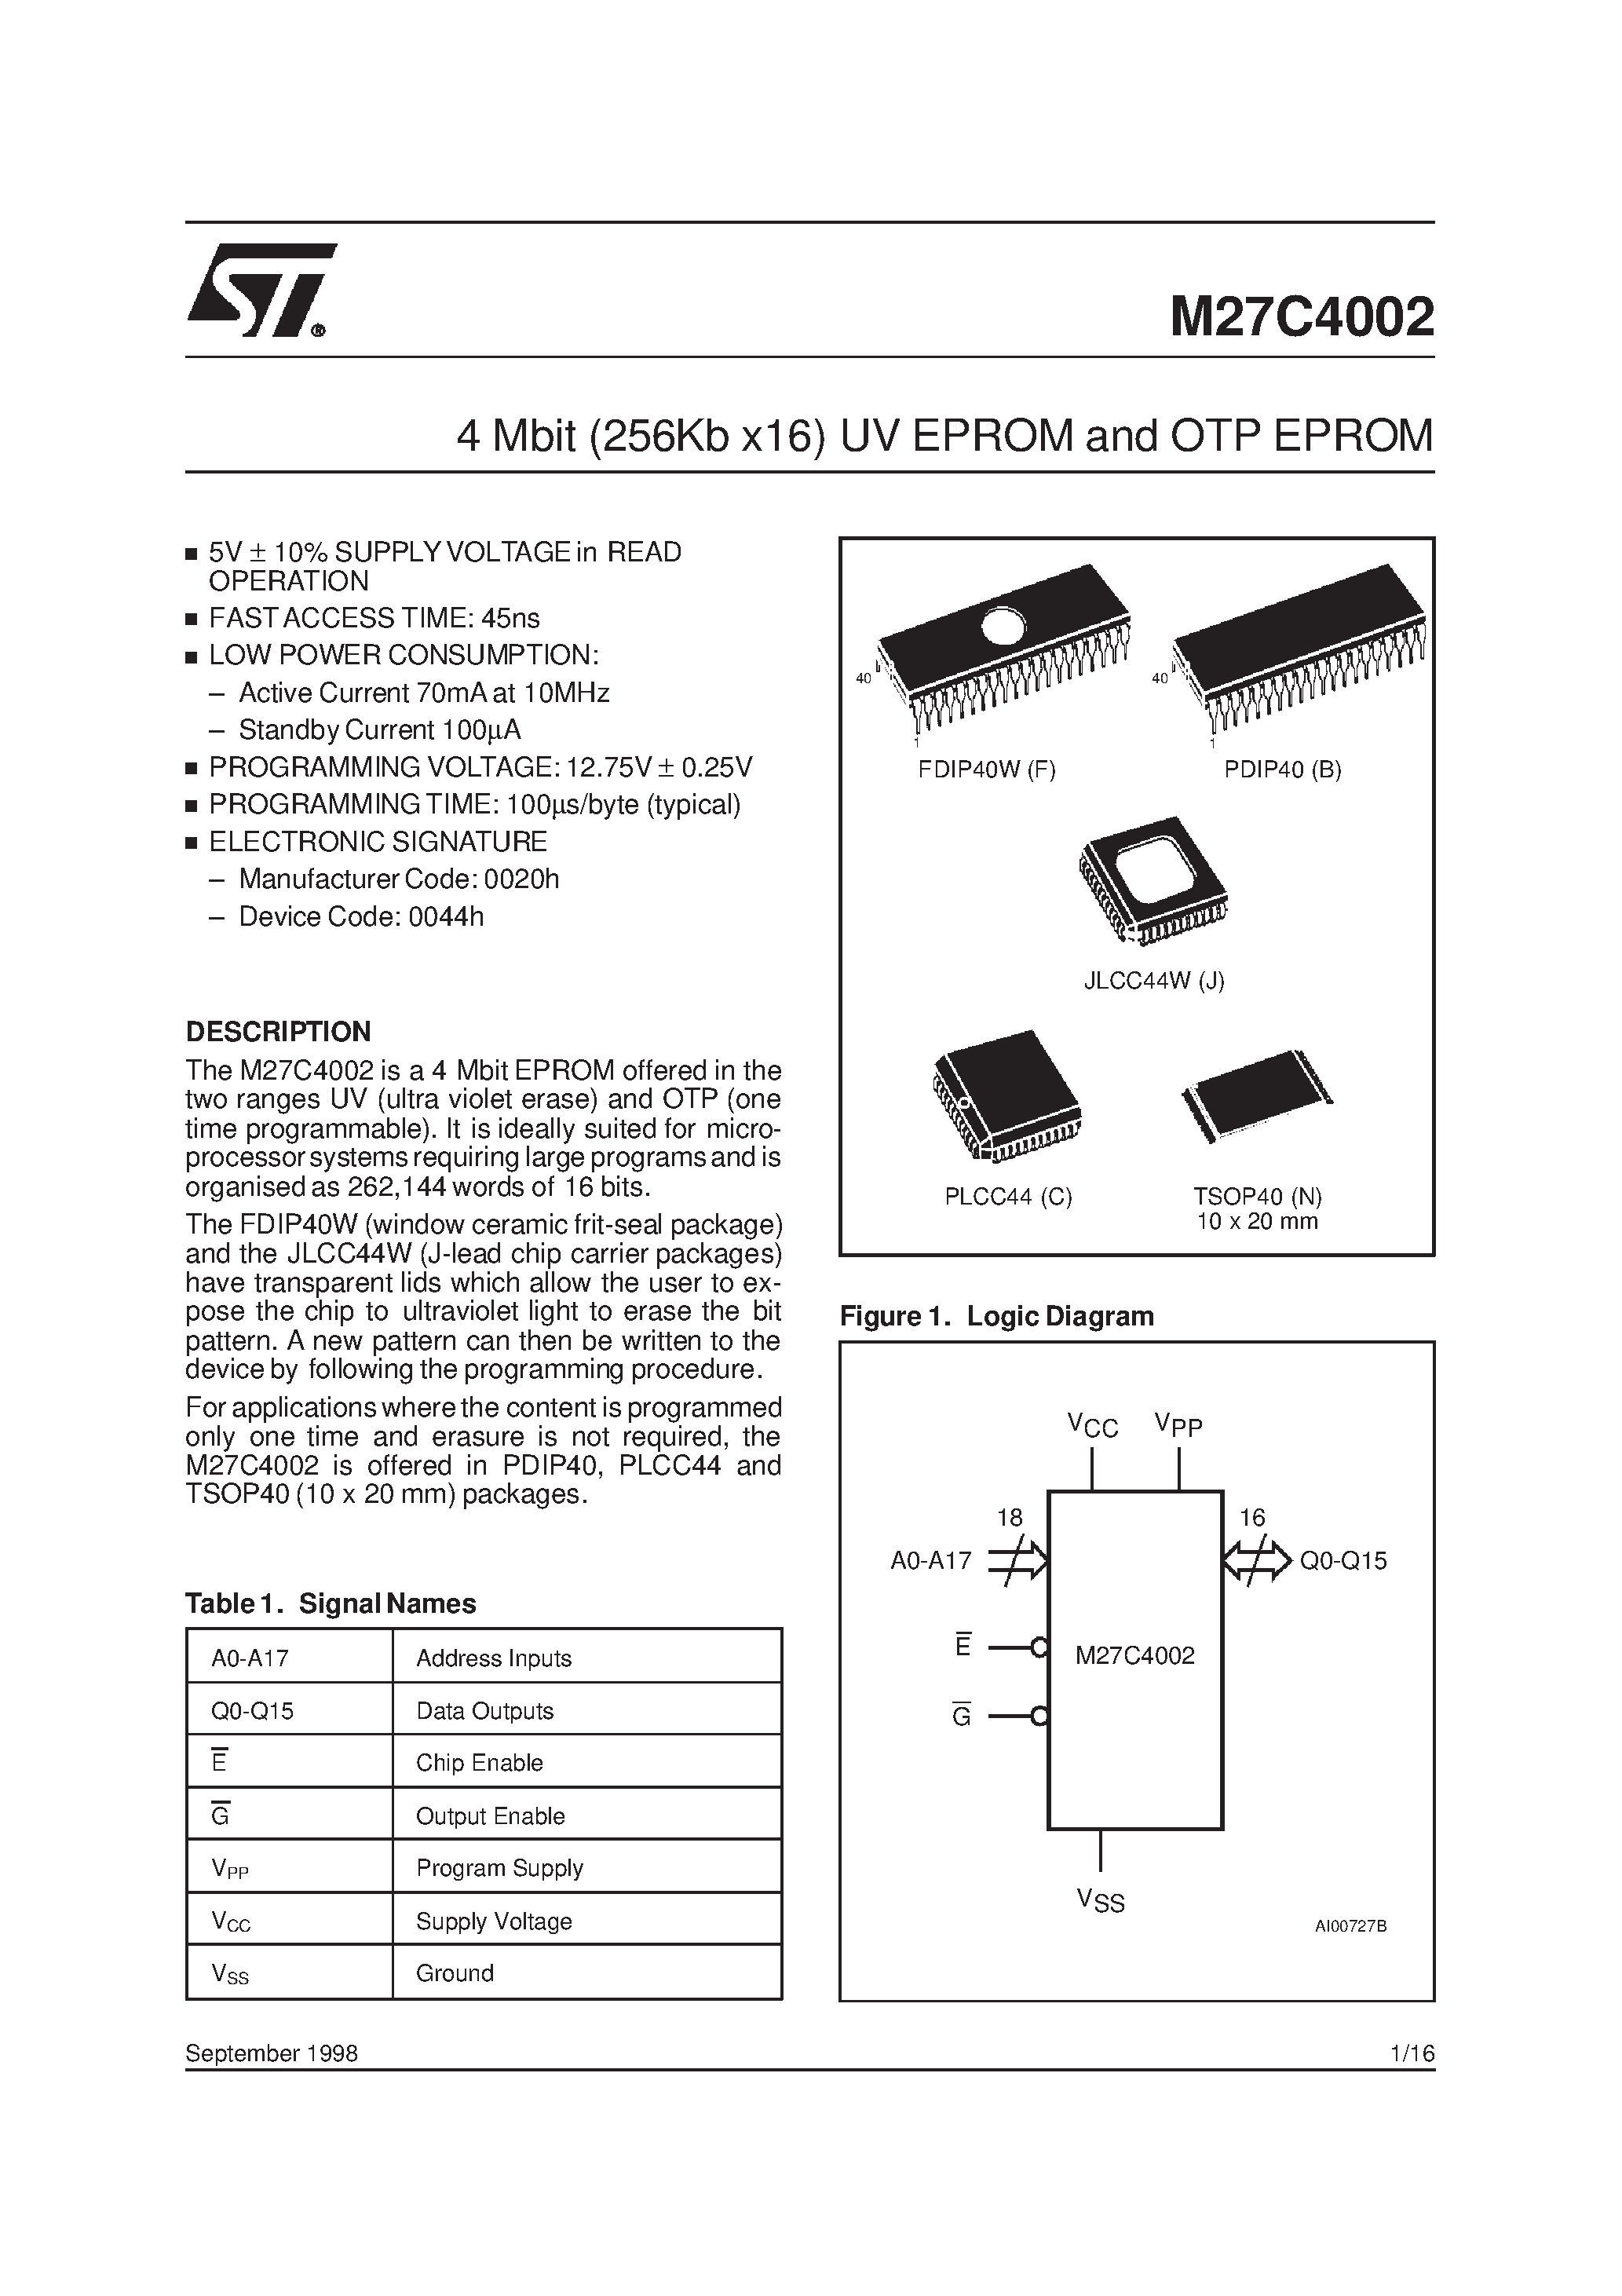 Datasheet M27C4002-10C1X - 4 Mbit 256Kb x16 UV EPROM and OTP EPROM page 1